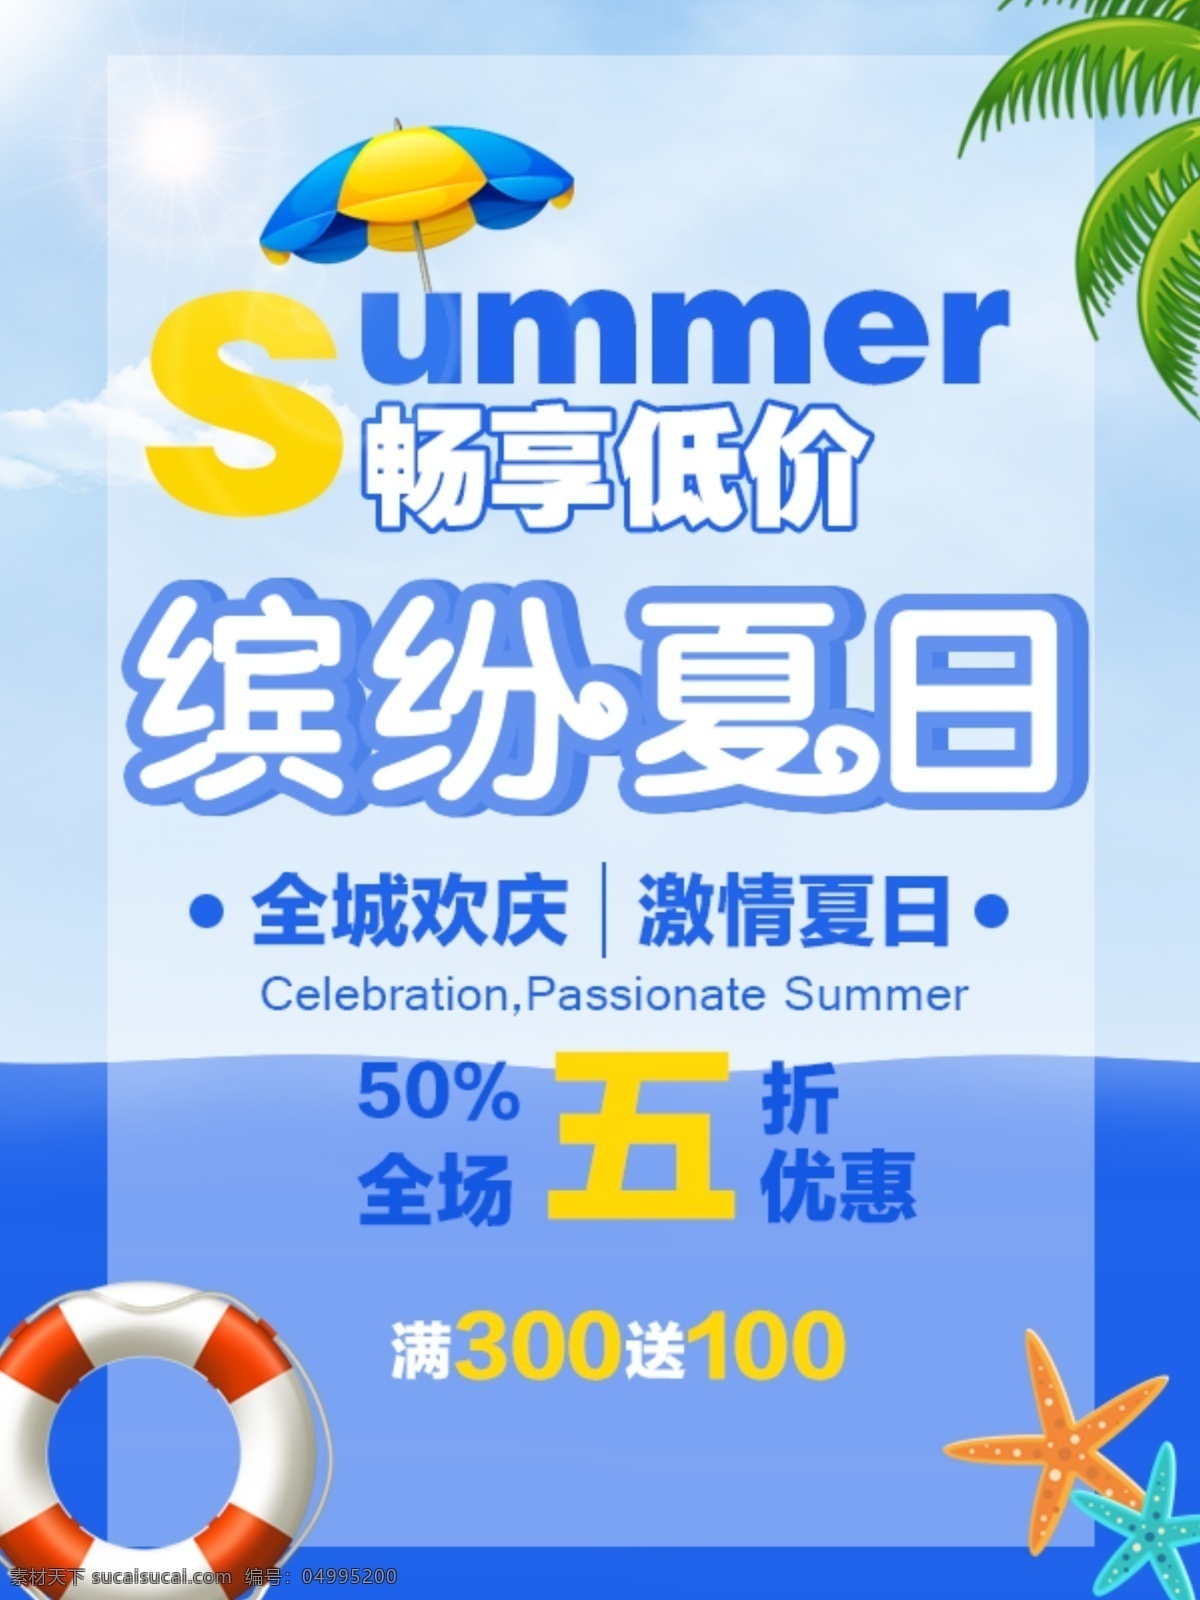 缤纷 夏日 畅 享 低价 海报 summer 优惠 促销 宣传 欢庆 活动